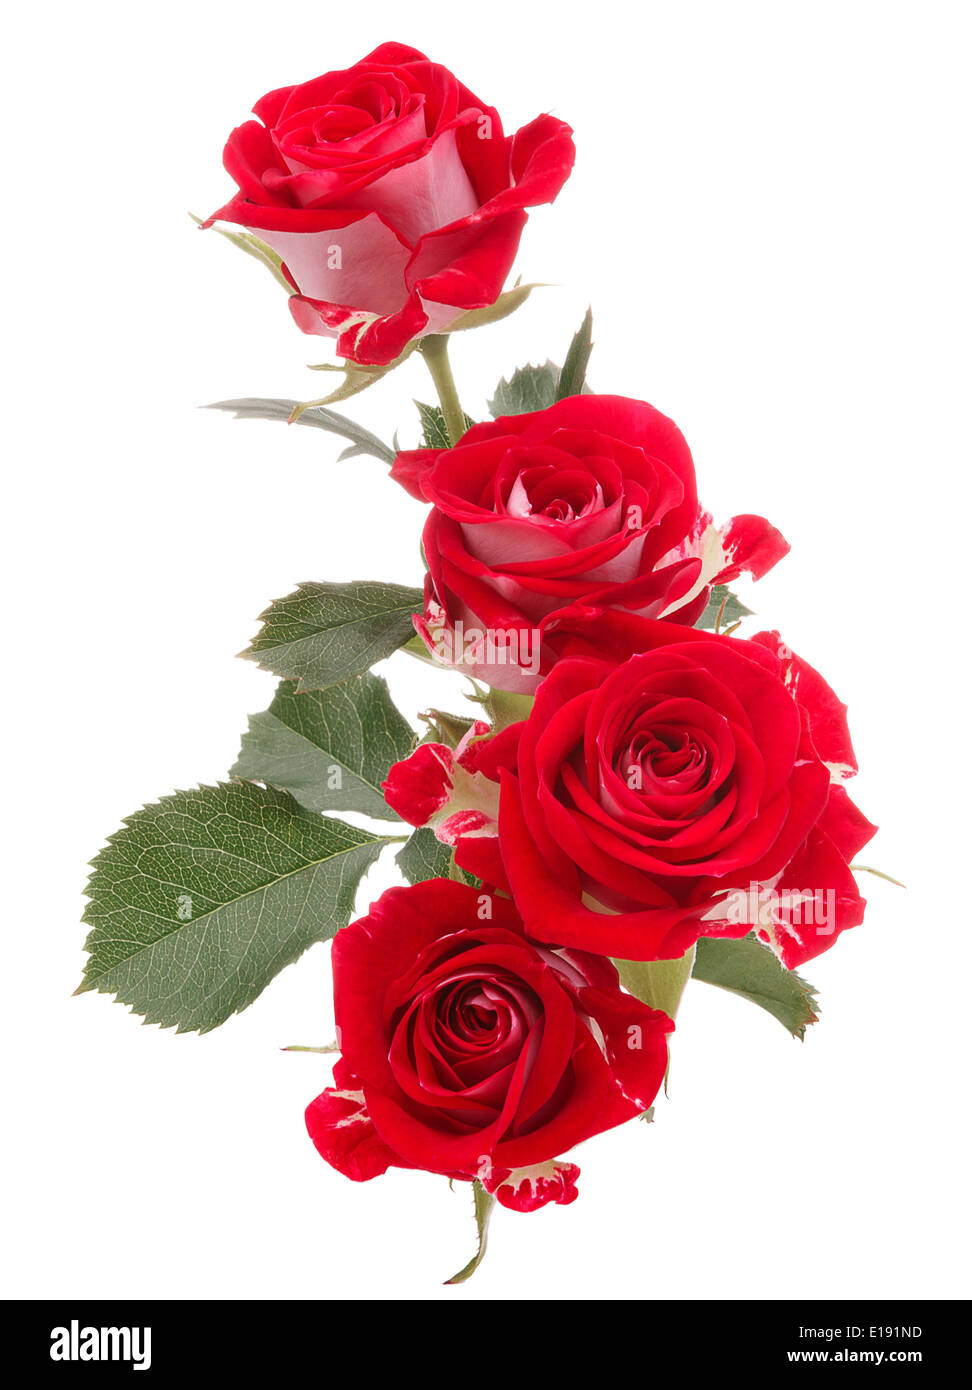 Cùng ngắm bó hoa hồng đỏ cực đẹp cắm trên nền trắng tinh khôi như chúng đang nói lên một câu chuyện tình yêu ngọt ngào. Hình ảnh này sẽ đem lại cảm giác lãng mạn và thăng hoa cho bạn khi nhìn vào đó.